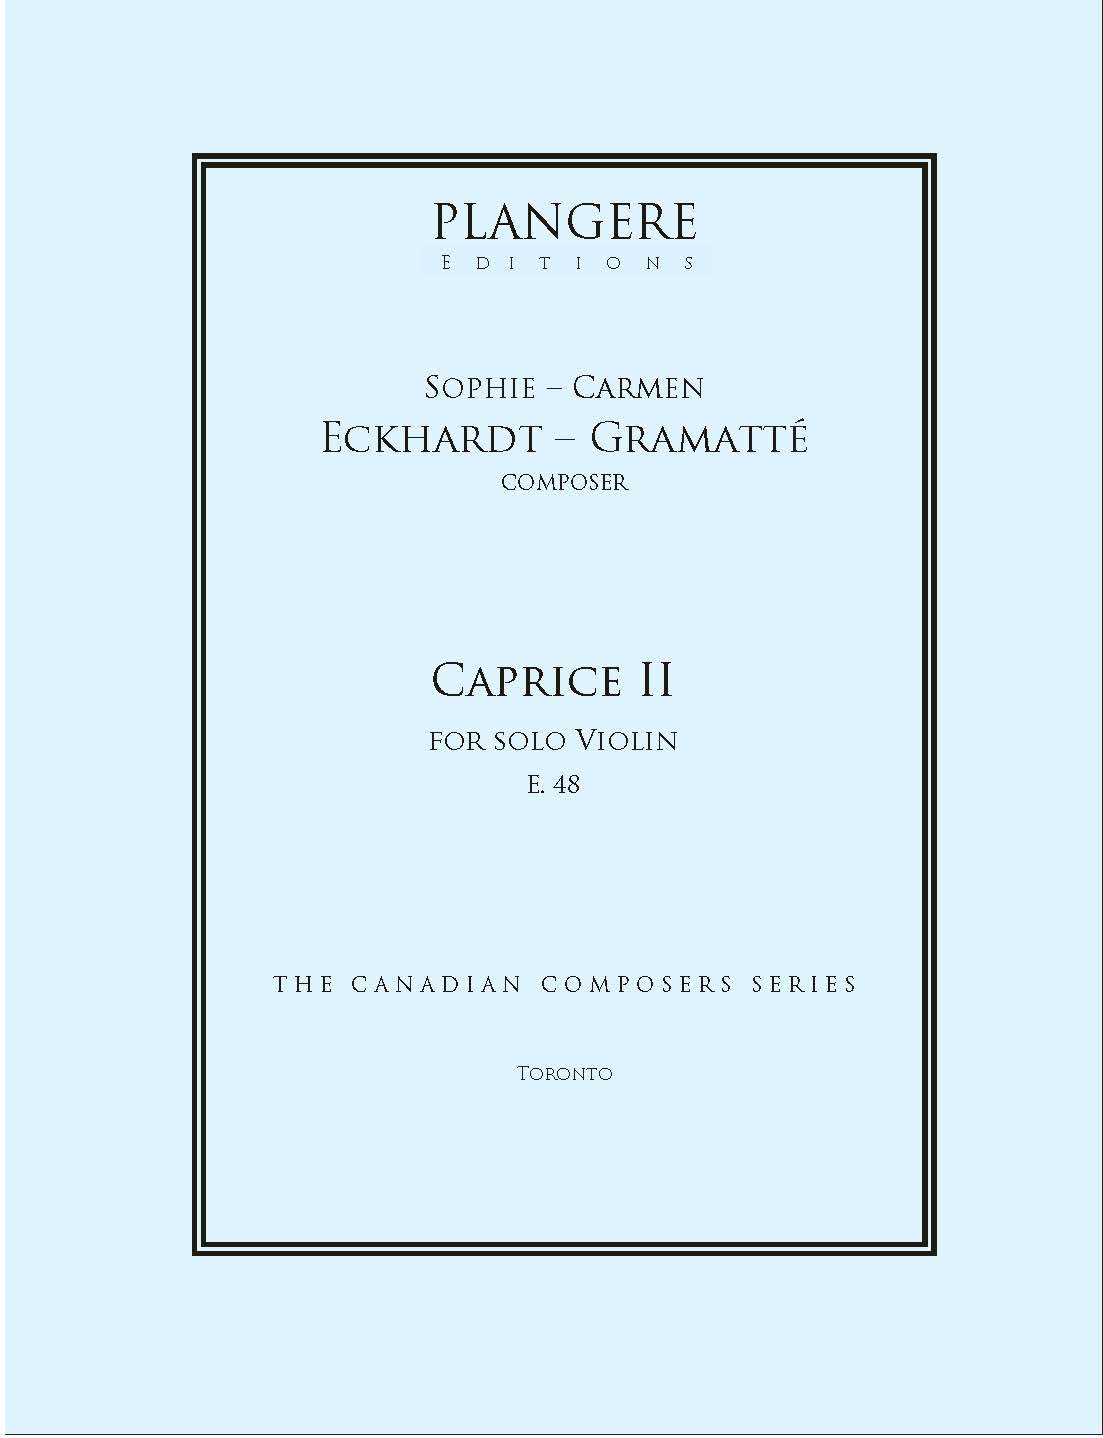 Caprice II for solo Violin   E. 48